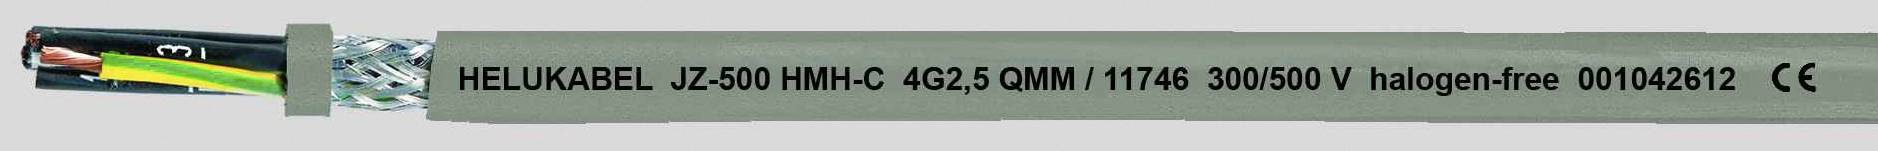 HELUKABEL JZ-500 HMH-C Steuerleitung 5 G 1 mm² Grau 11703-500 500 m